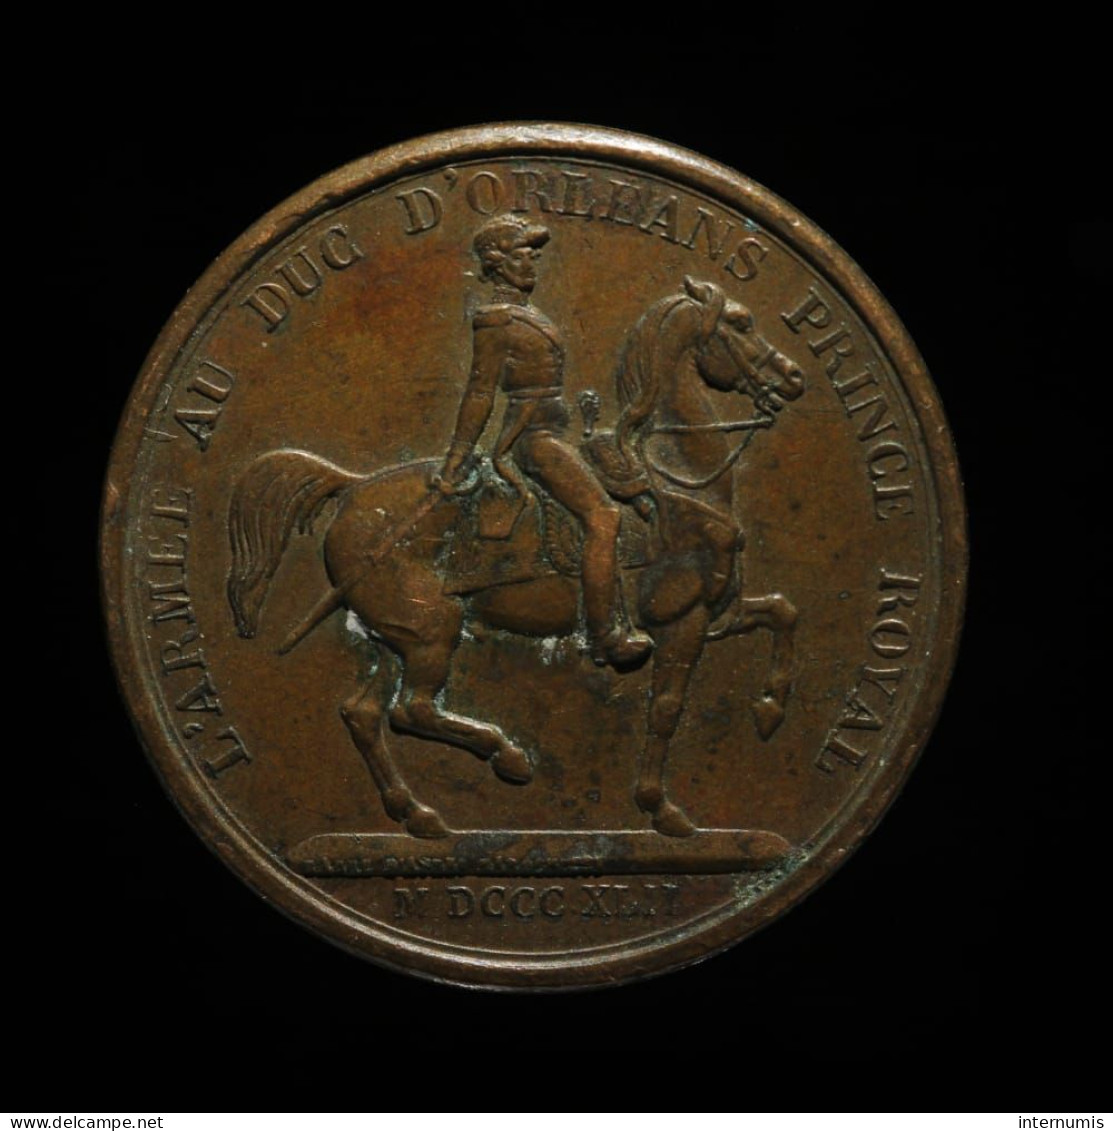 MEDAILLE / MEDAL : France, Louis-Philippe I, L'armée Au Duc D'Orleans Prince Royal, 1842, Cuivre (Copper), TTB+ (EF) - Royal / Of Nobility